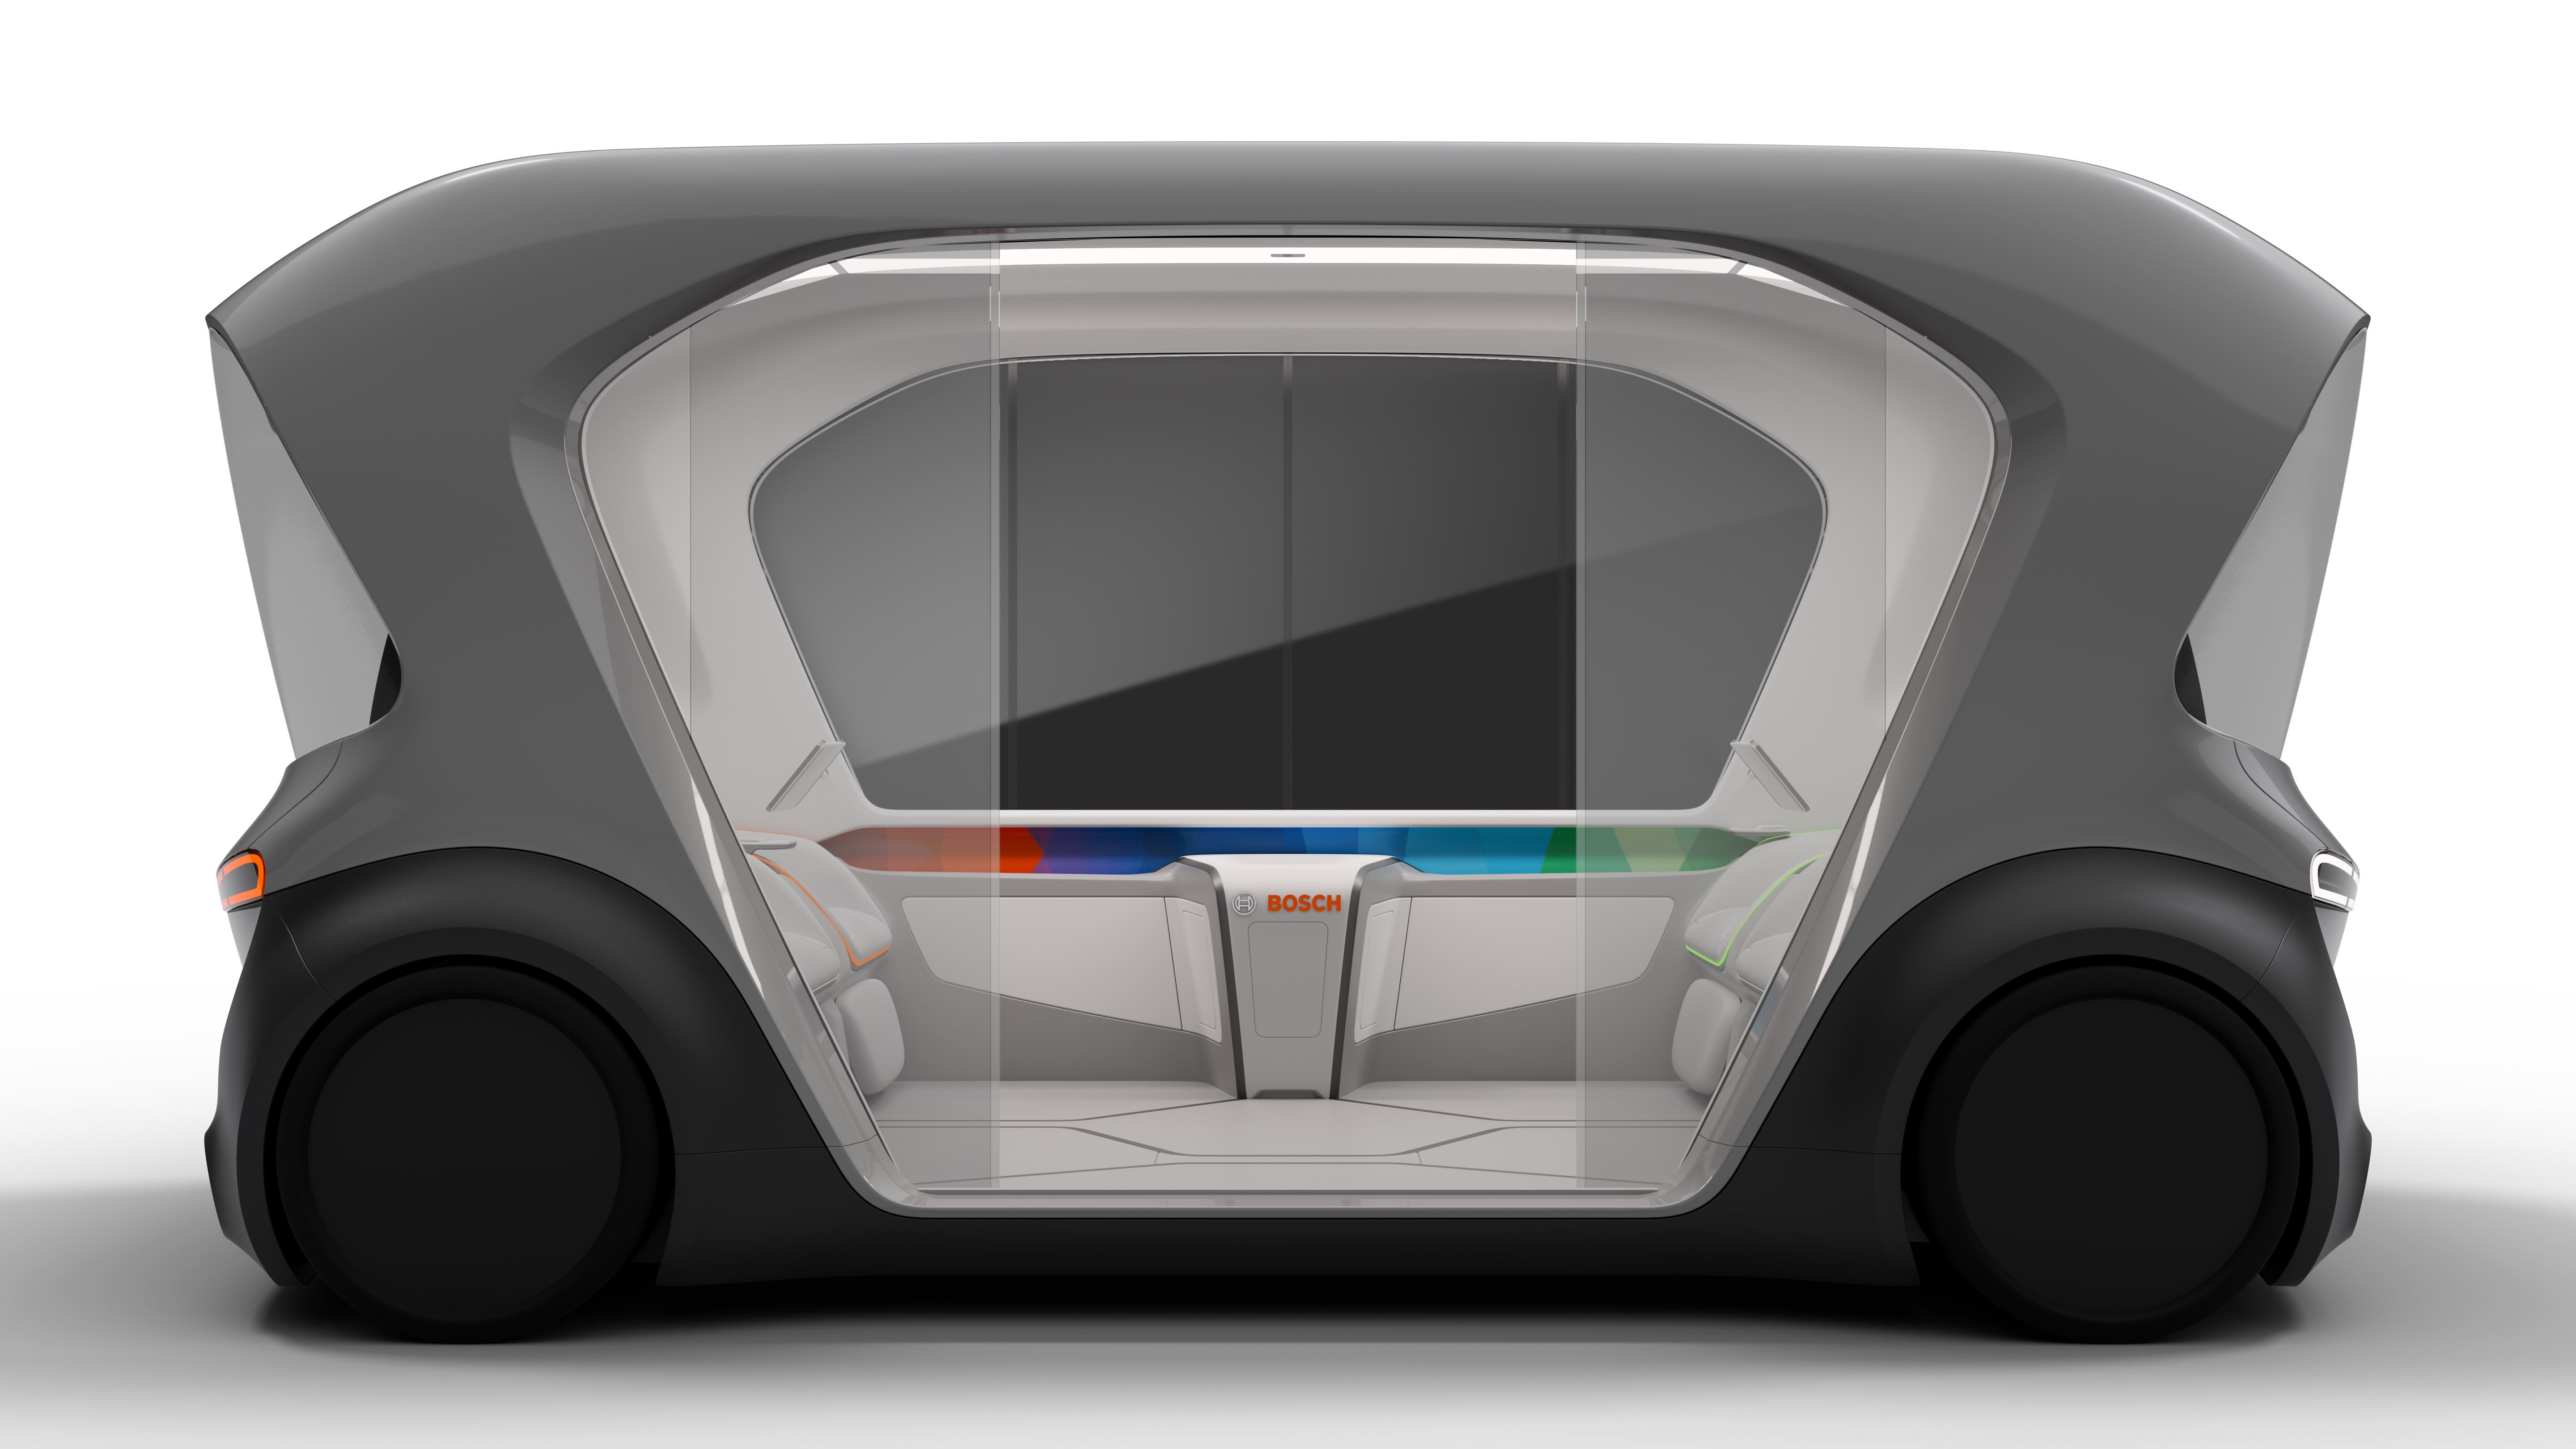 Debut nového konceptu vozidla kyvadlové dopravy na CES 2019 v Las Vegas